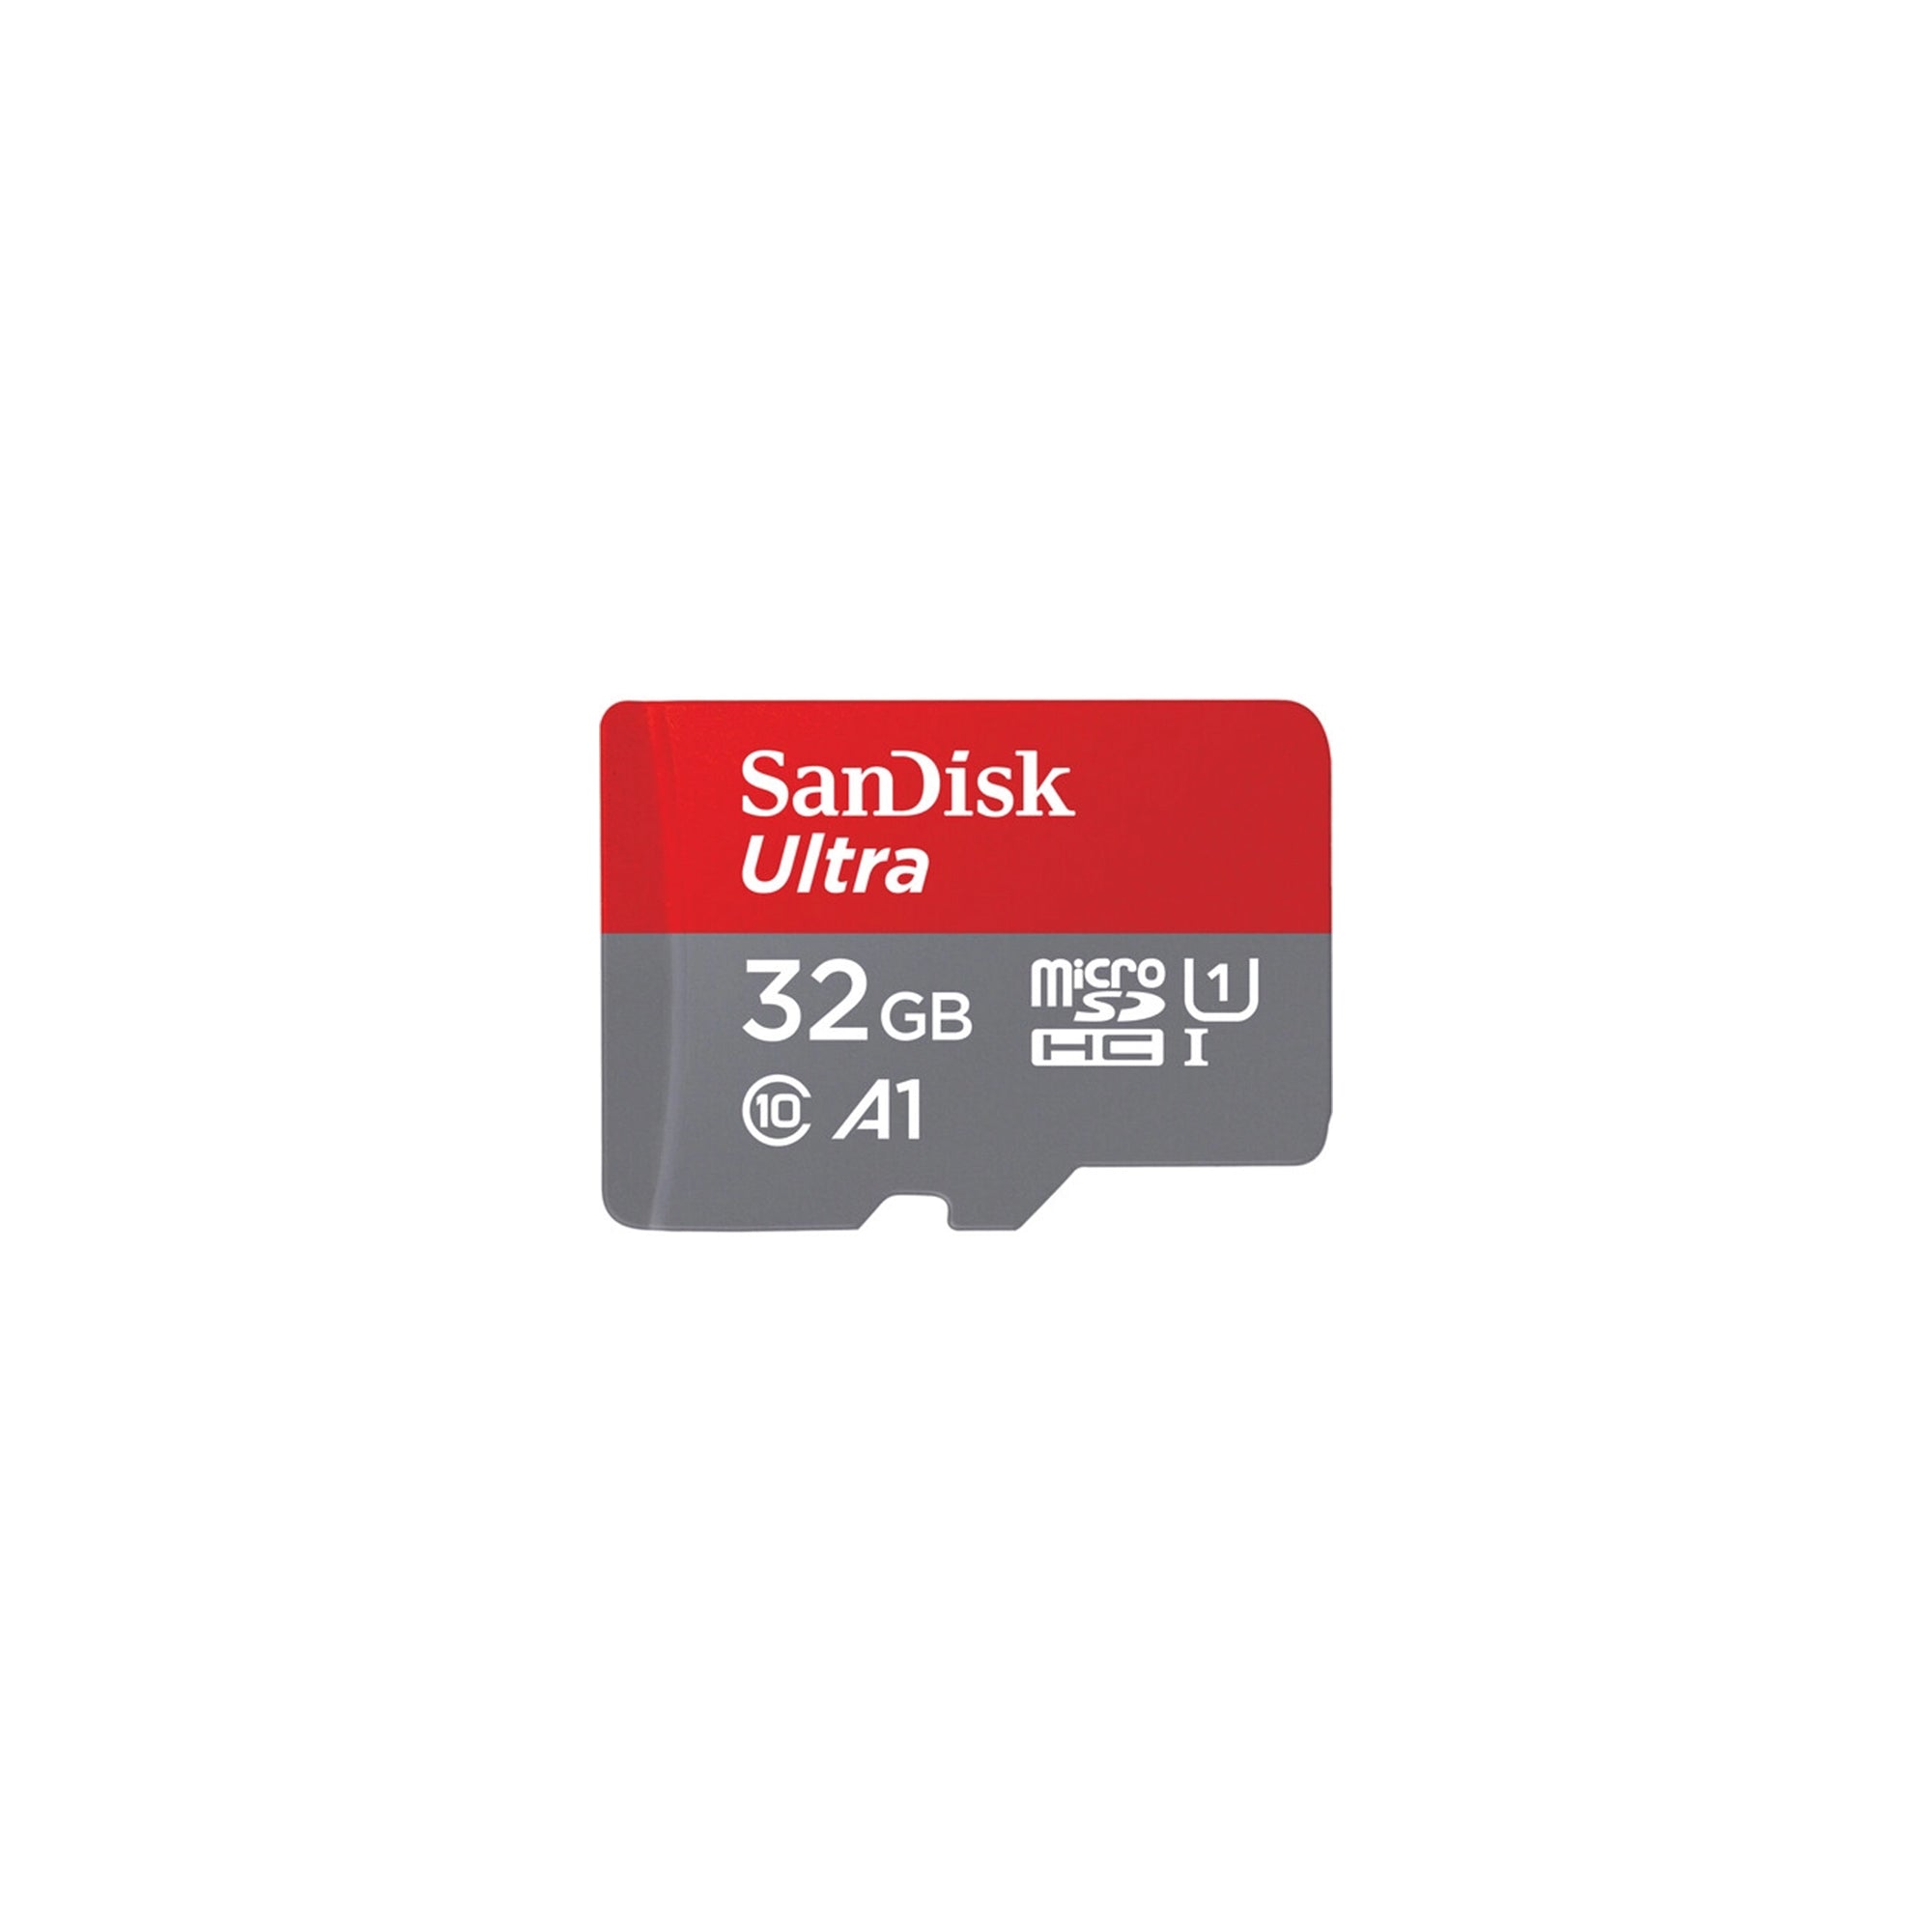 SanDisk Ultra microSDHC, 32GB, U1, C10, A1, UHS-1, 120MB/s R, 4x6, 10Y